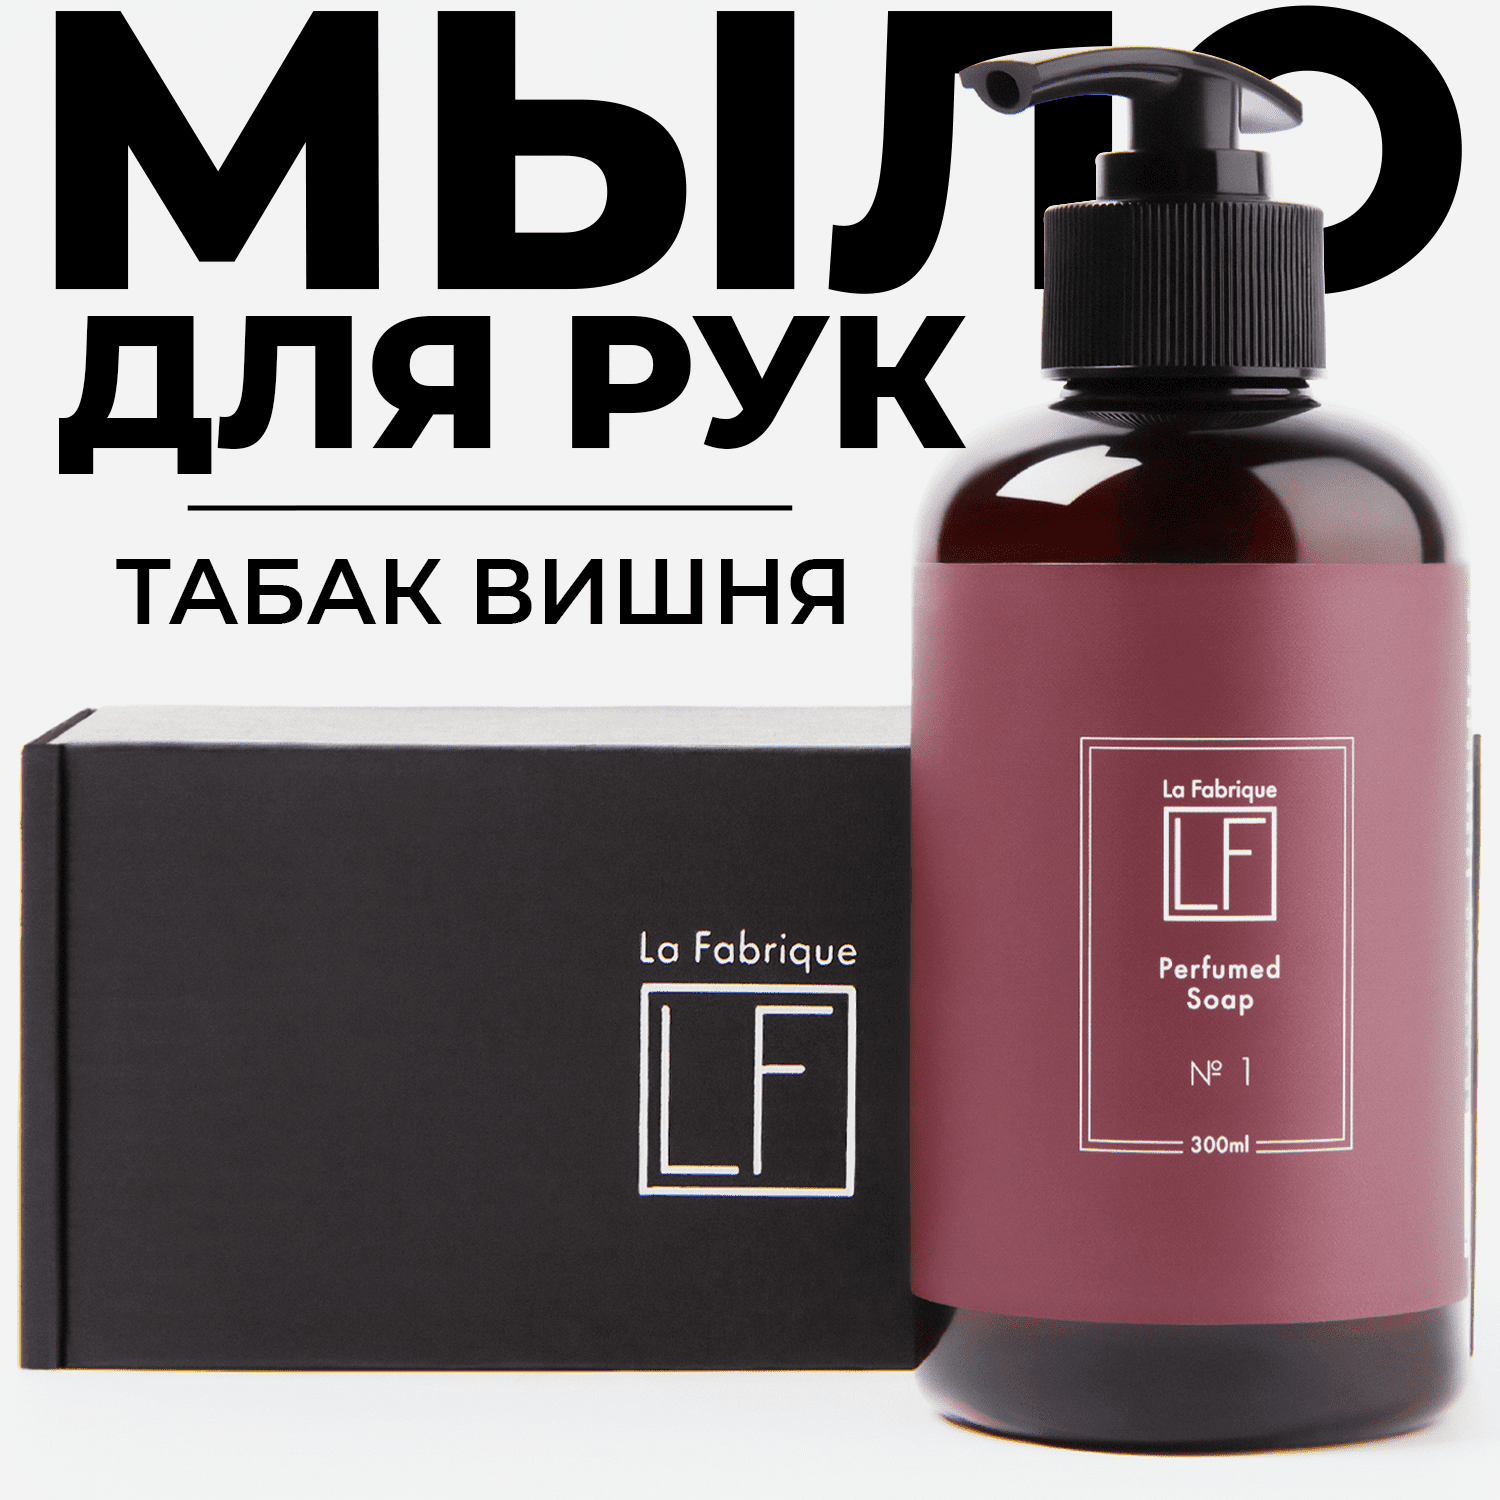 Жидкое мыло для рук La Fabrique парфюмированое с ароматом табака и вишни 300 мл - фото 1